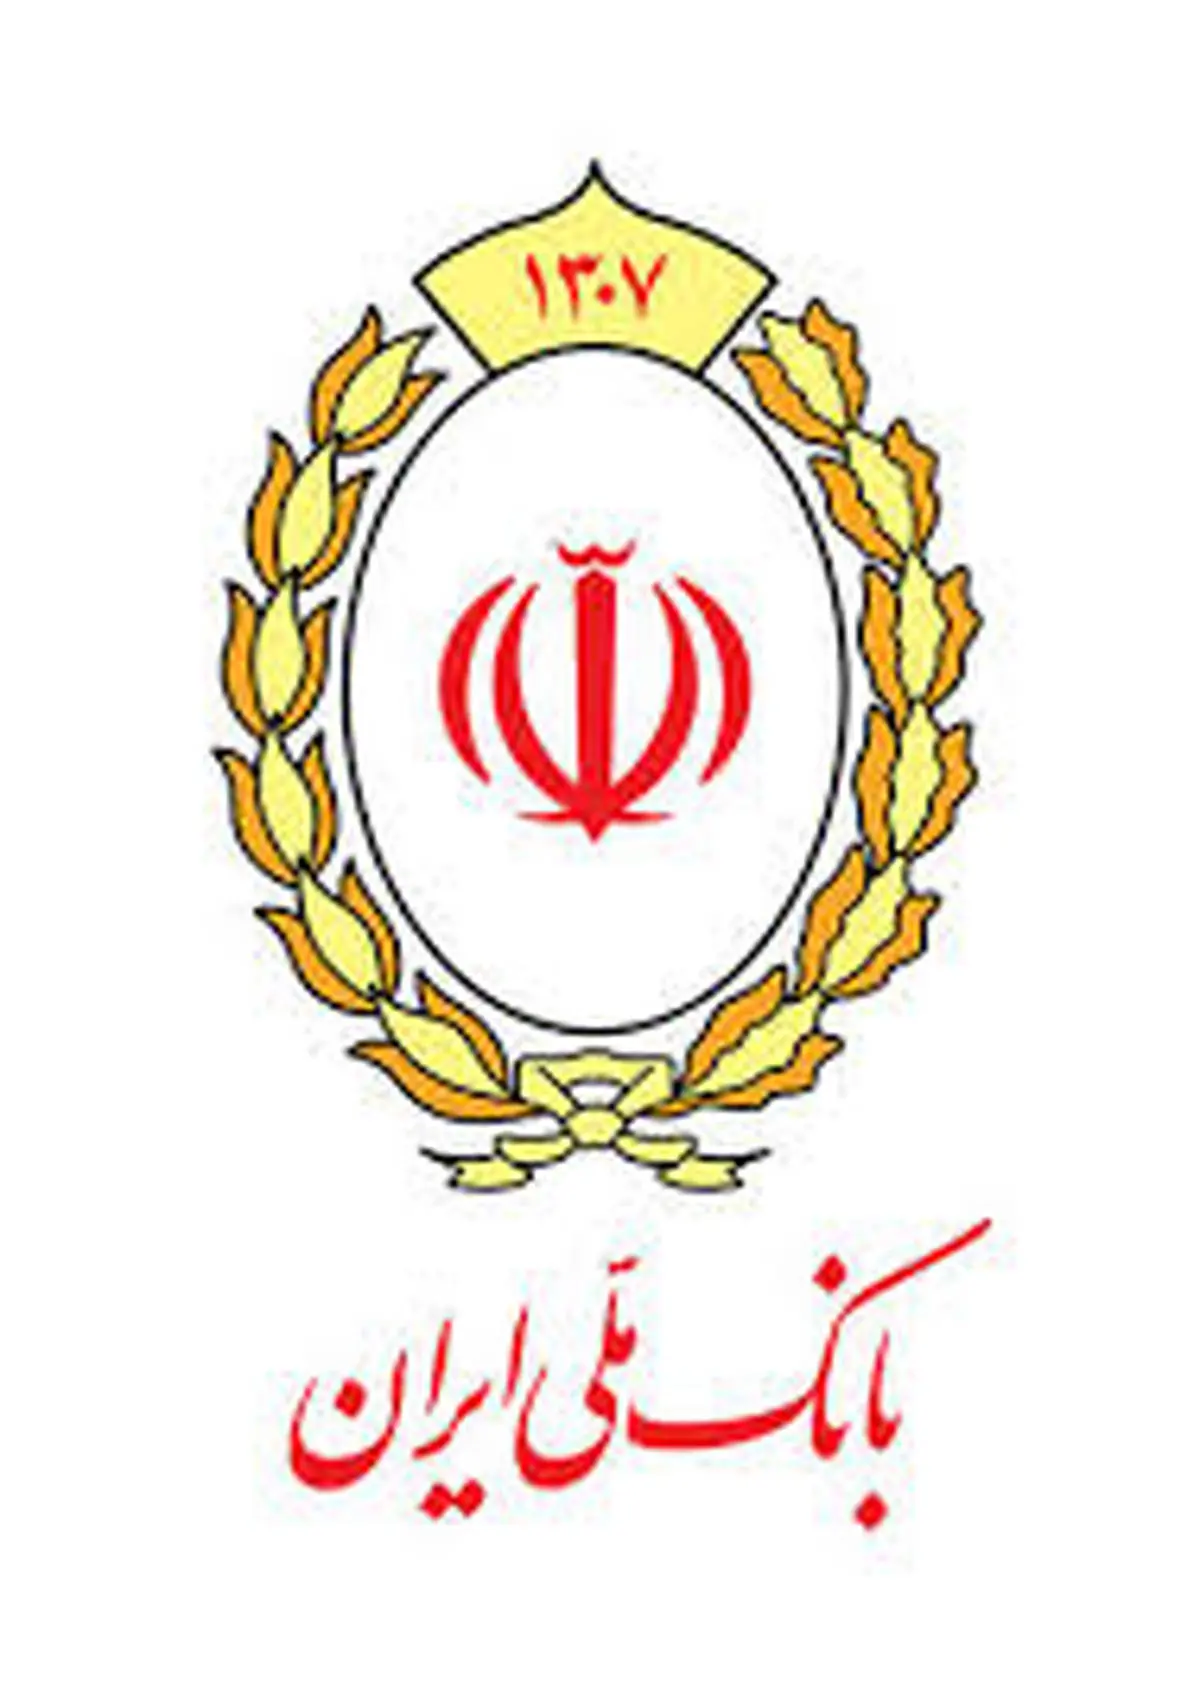 توضیحات بانک ملی ایران به فروشندگان سهام عدالت: تعهدنامه فروش را به دقت مطالعه کنید

